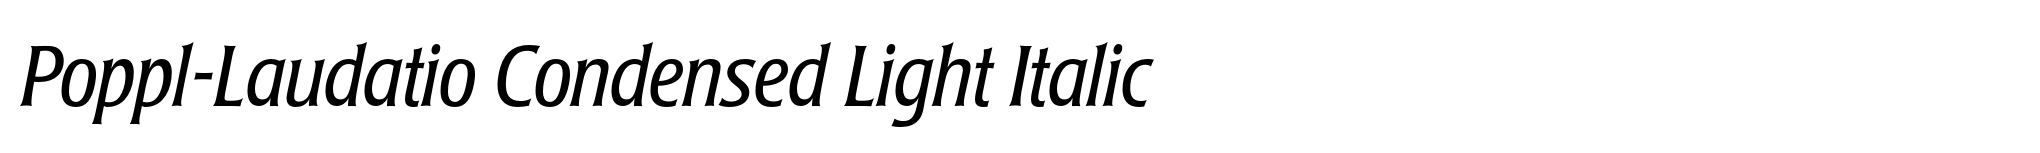 Poppl-Laudatio Condensed Light Italic image